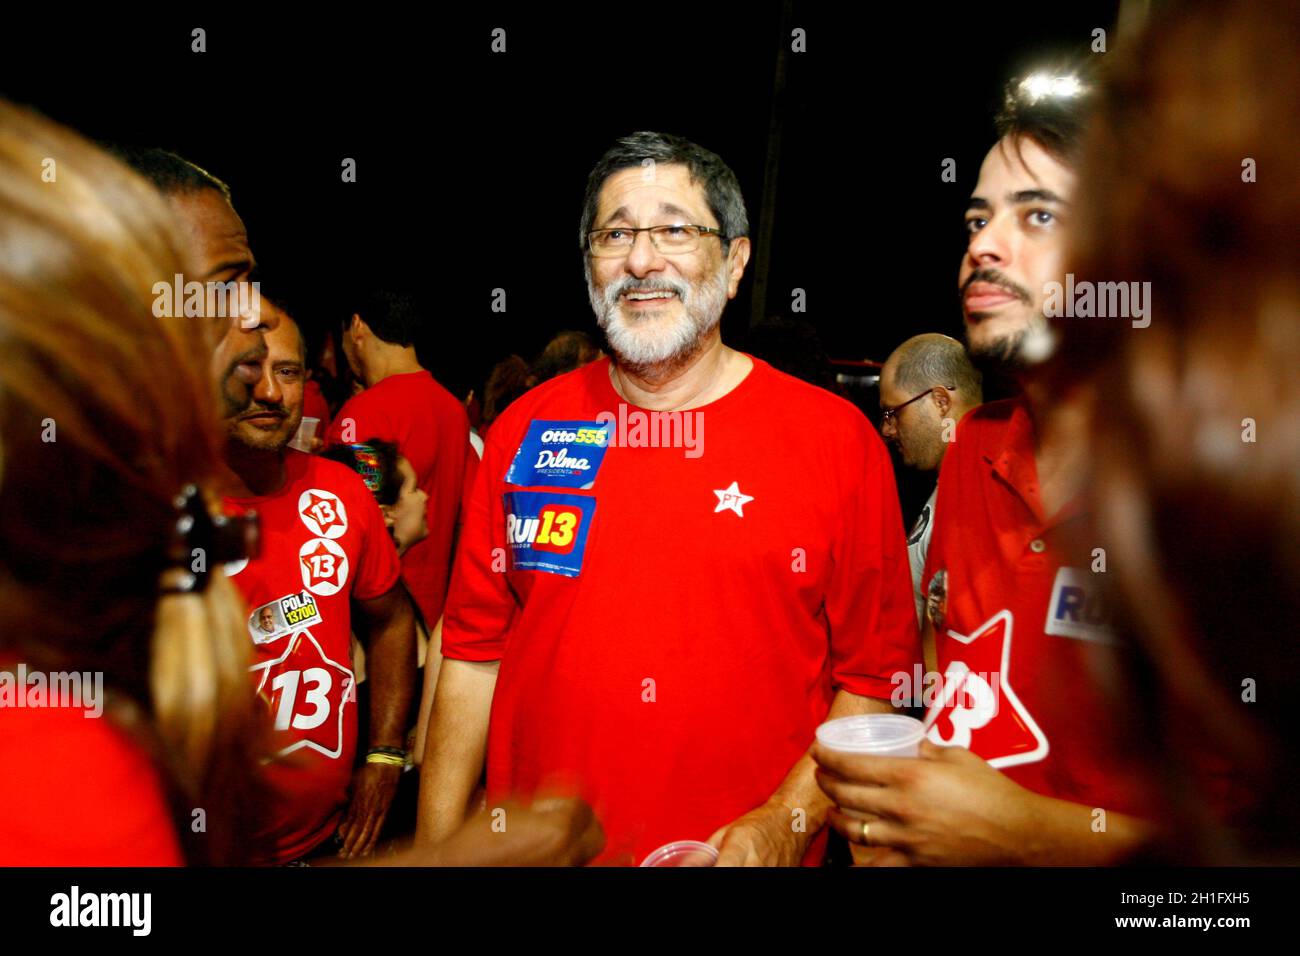 salvador, bahia / brasil - 5 de octubre de 2014: Partido de los trabajadores - PT - militantes celebran en el barrio de Río Vermelho en Salvador la victoria de Rui Costa Foto de stock